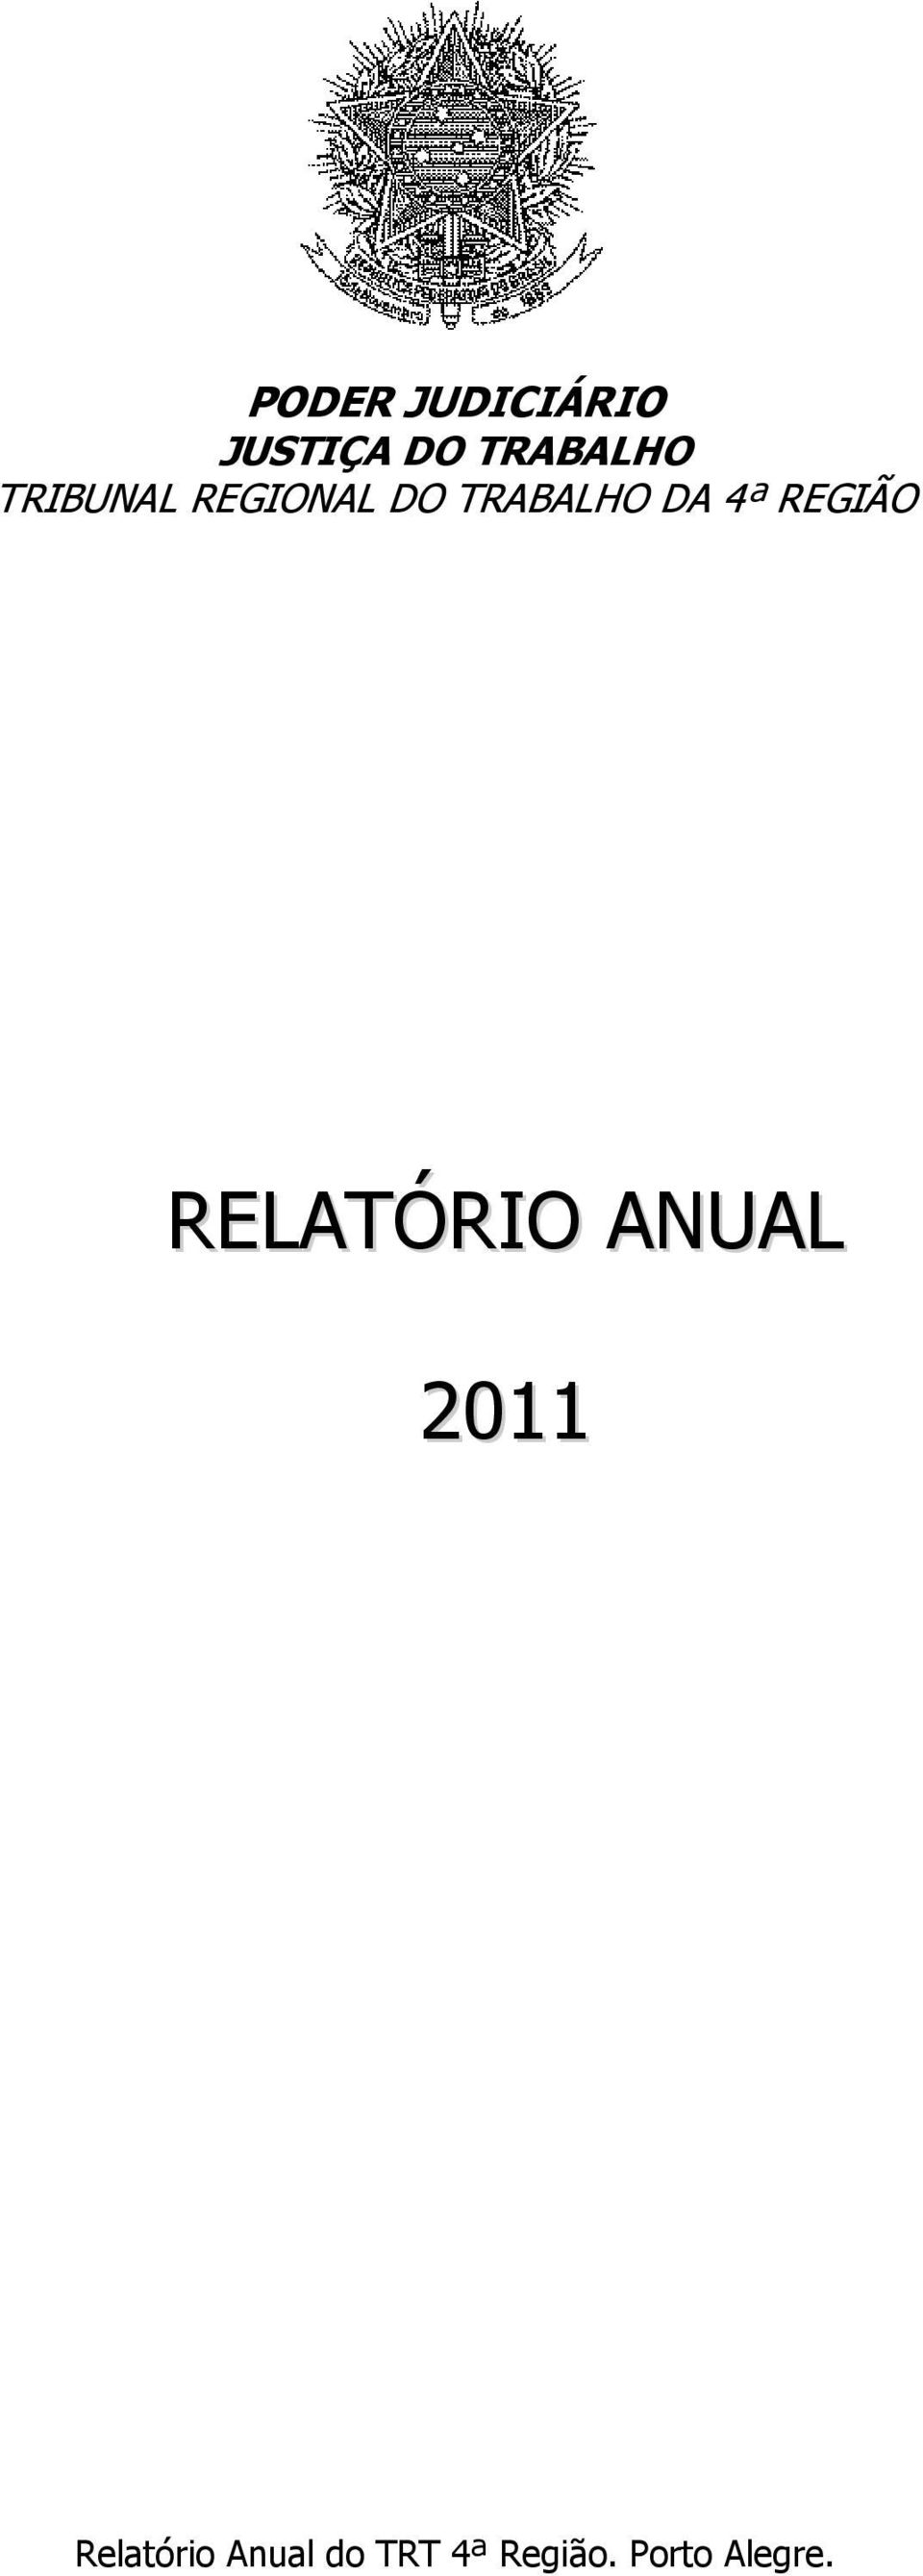 REGIÃO RELATÓRIO ANUAL 2011